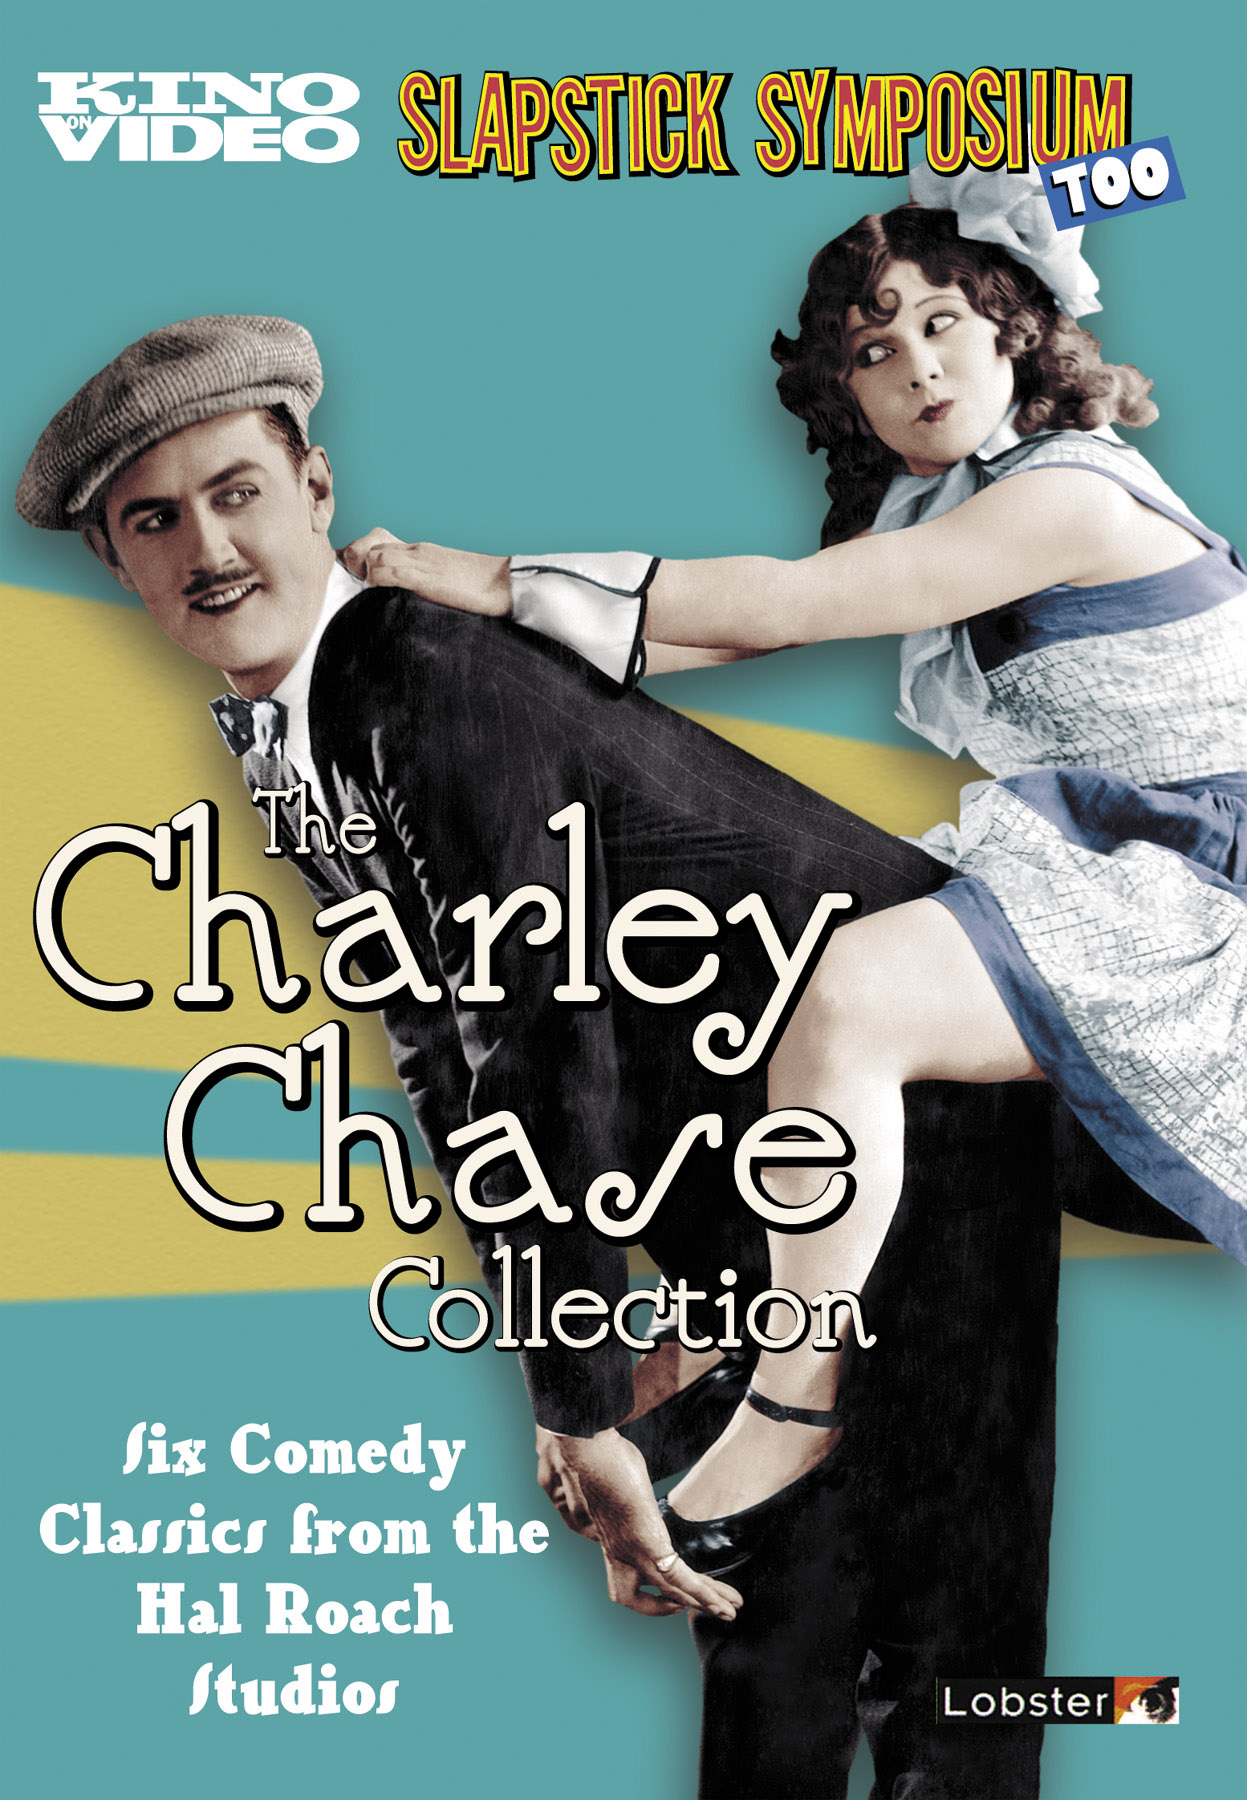 Charley Chase & Manuel Ferrara in Stripper Pole